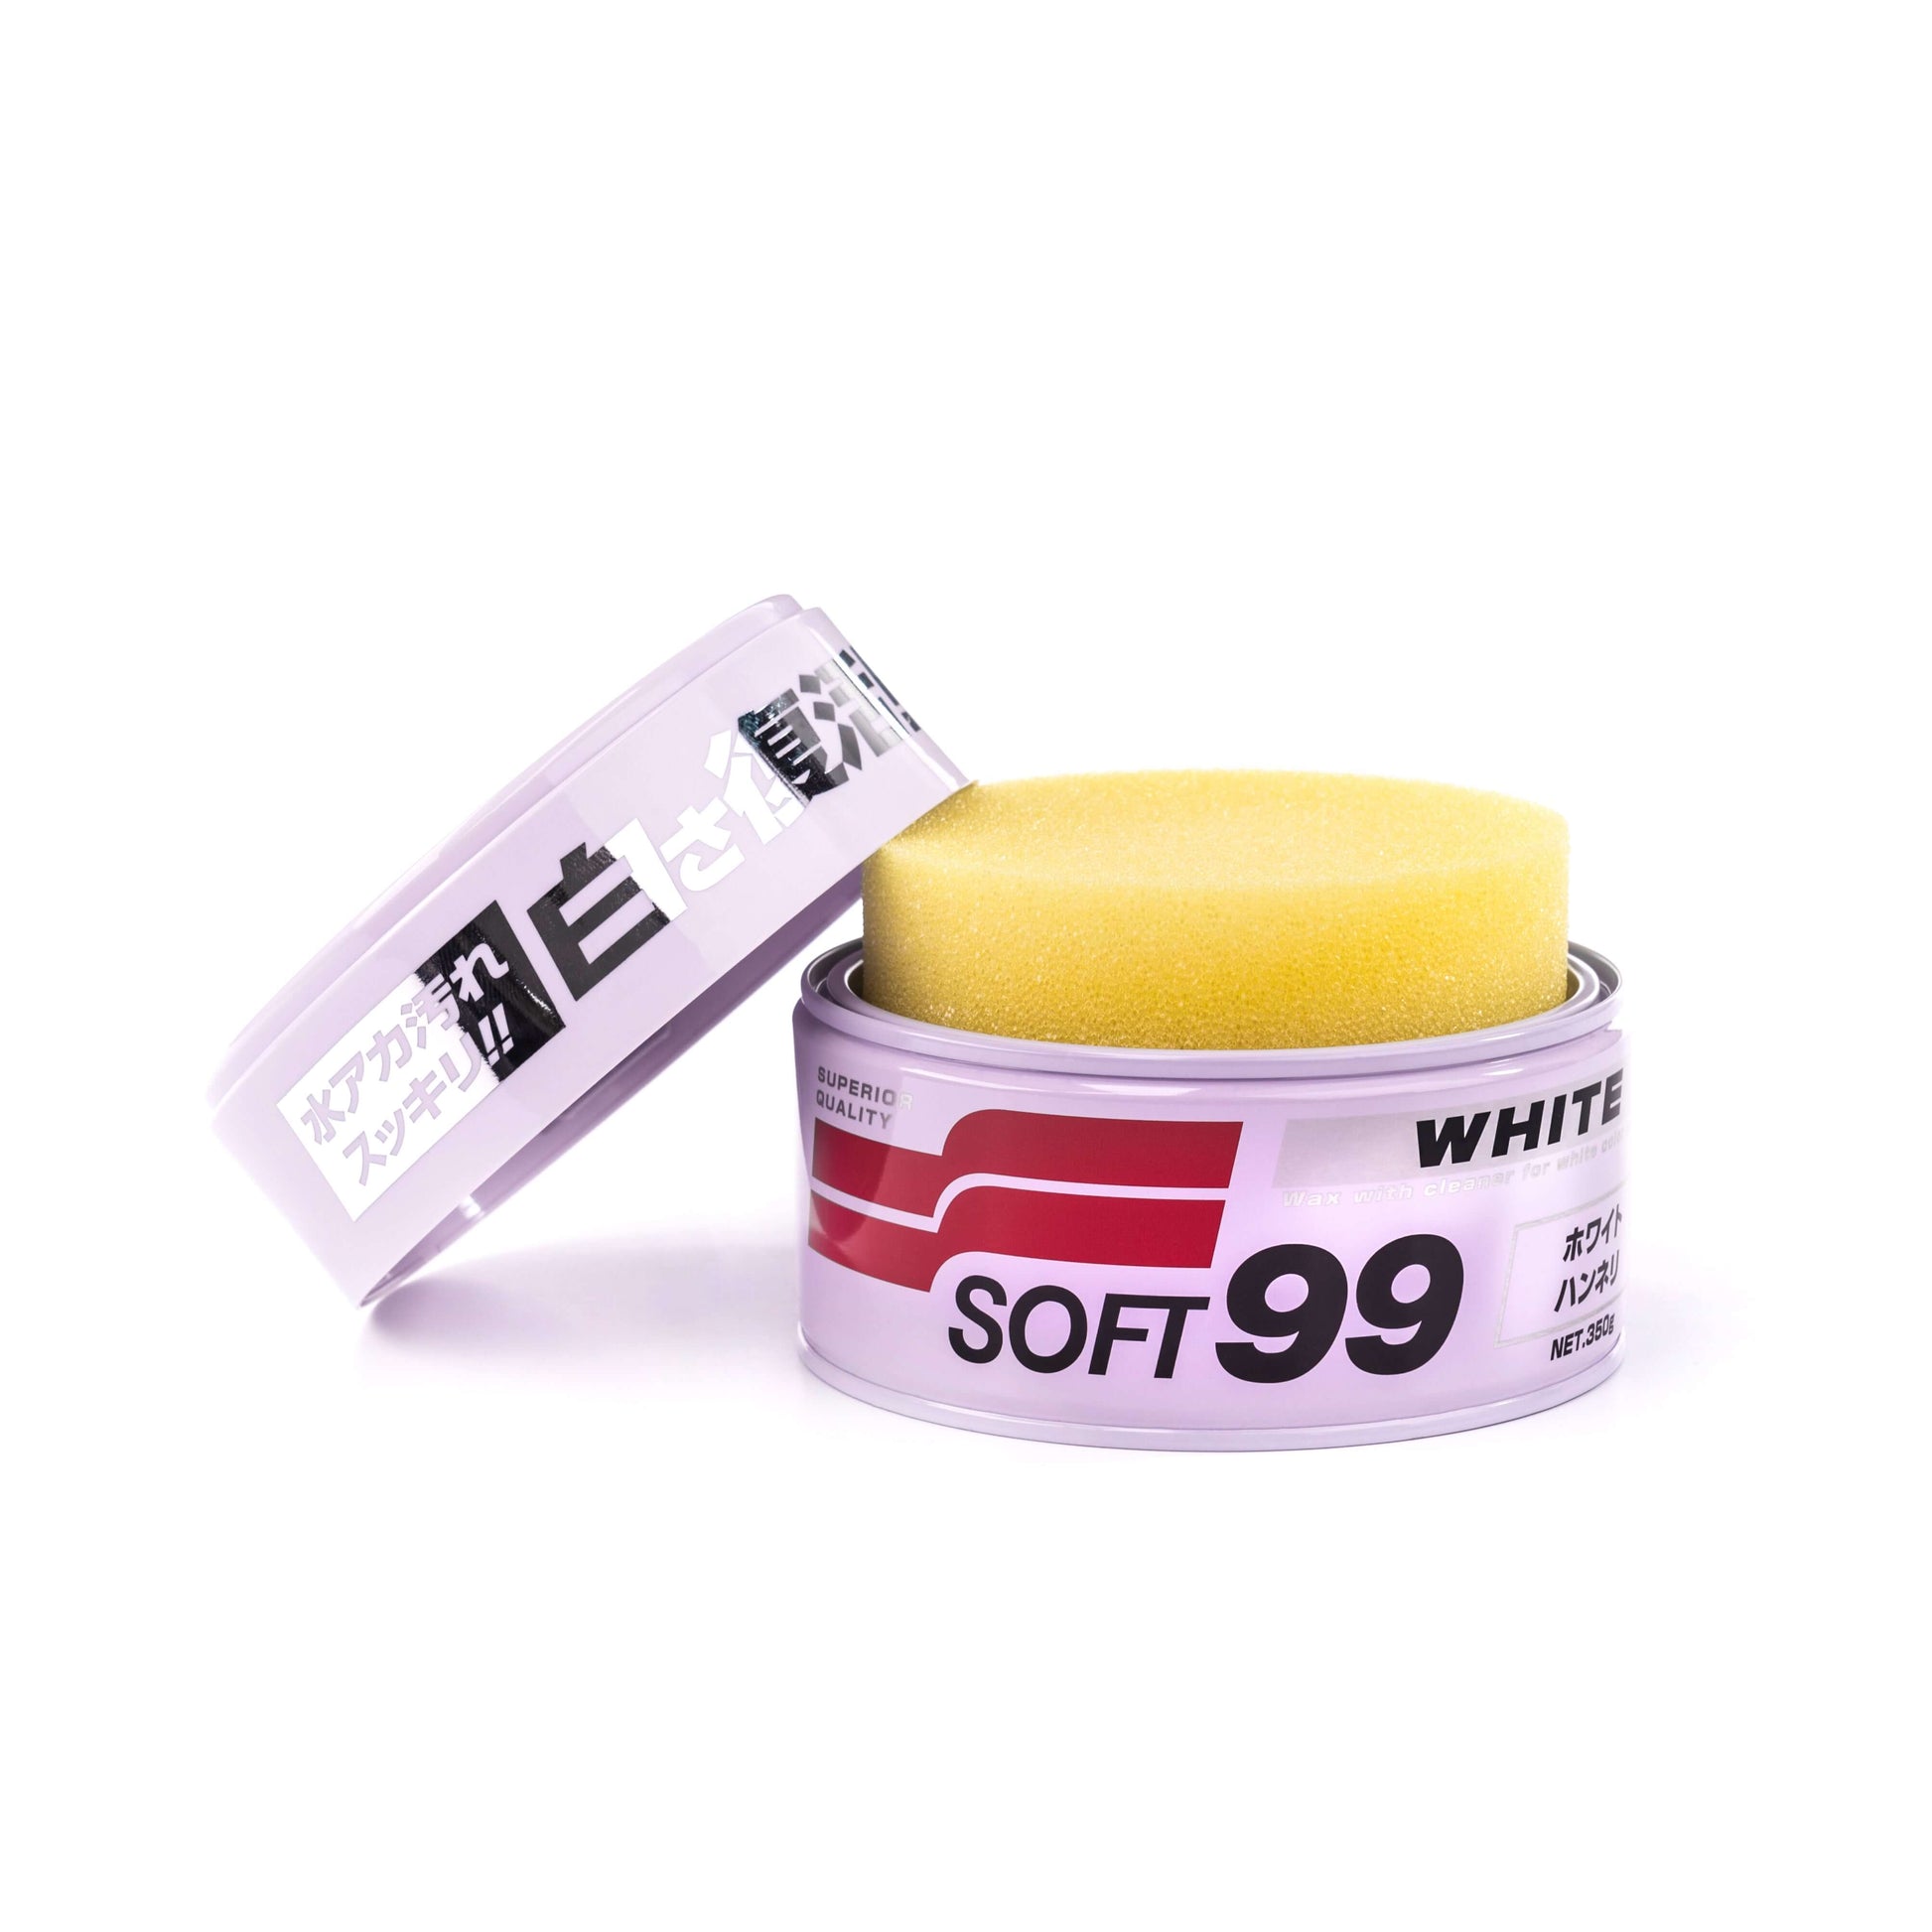 Soft99 - White Soft Wax 300g